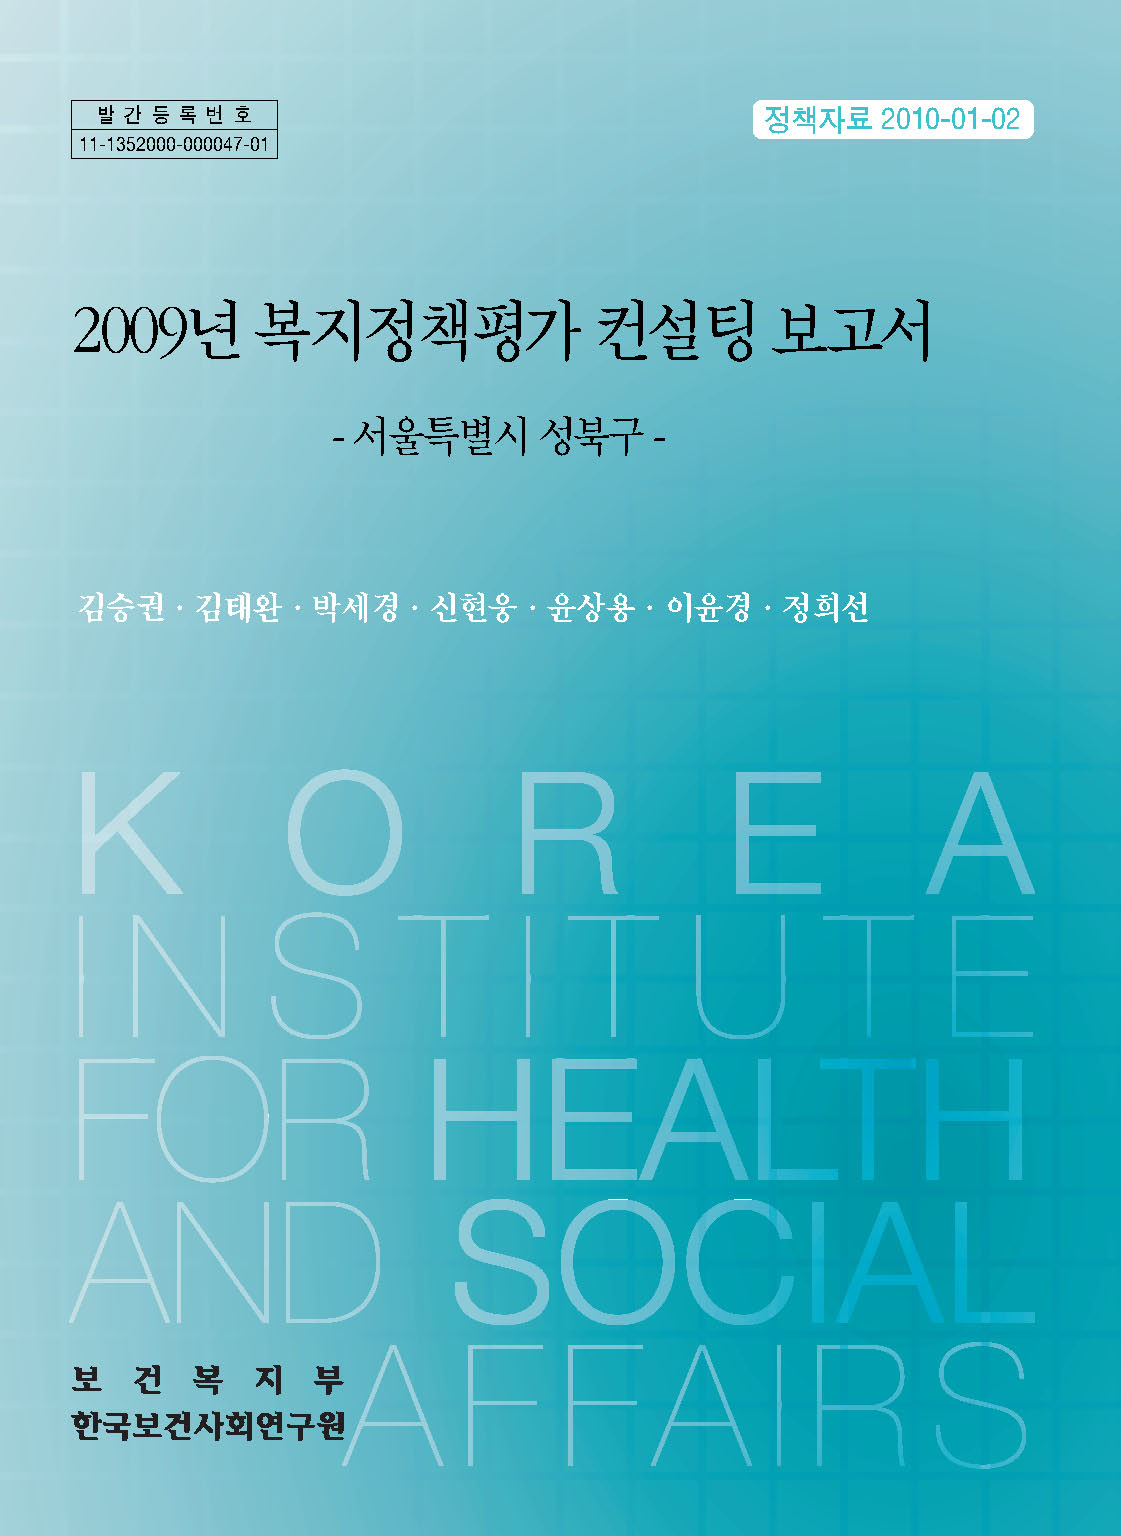 2009년 복지정책평가 컨설팅 보고서 -서울특별시 성북구-